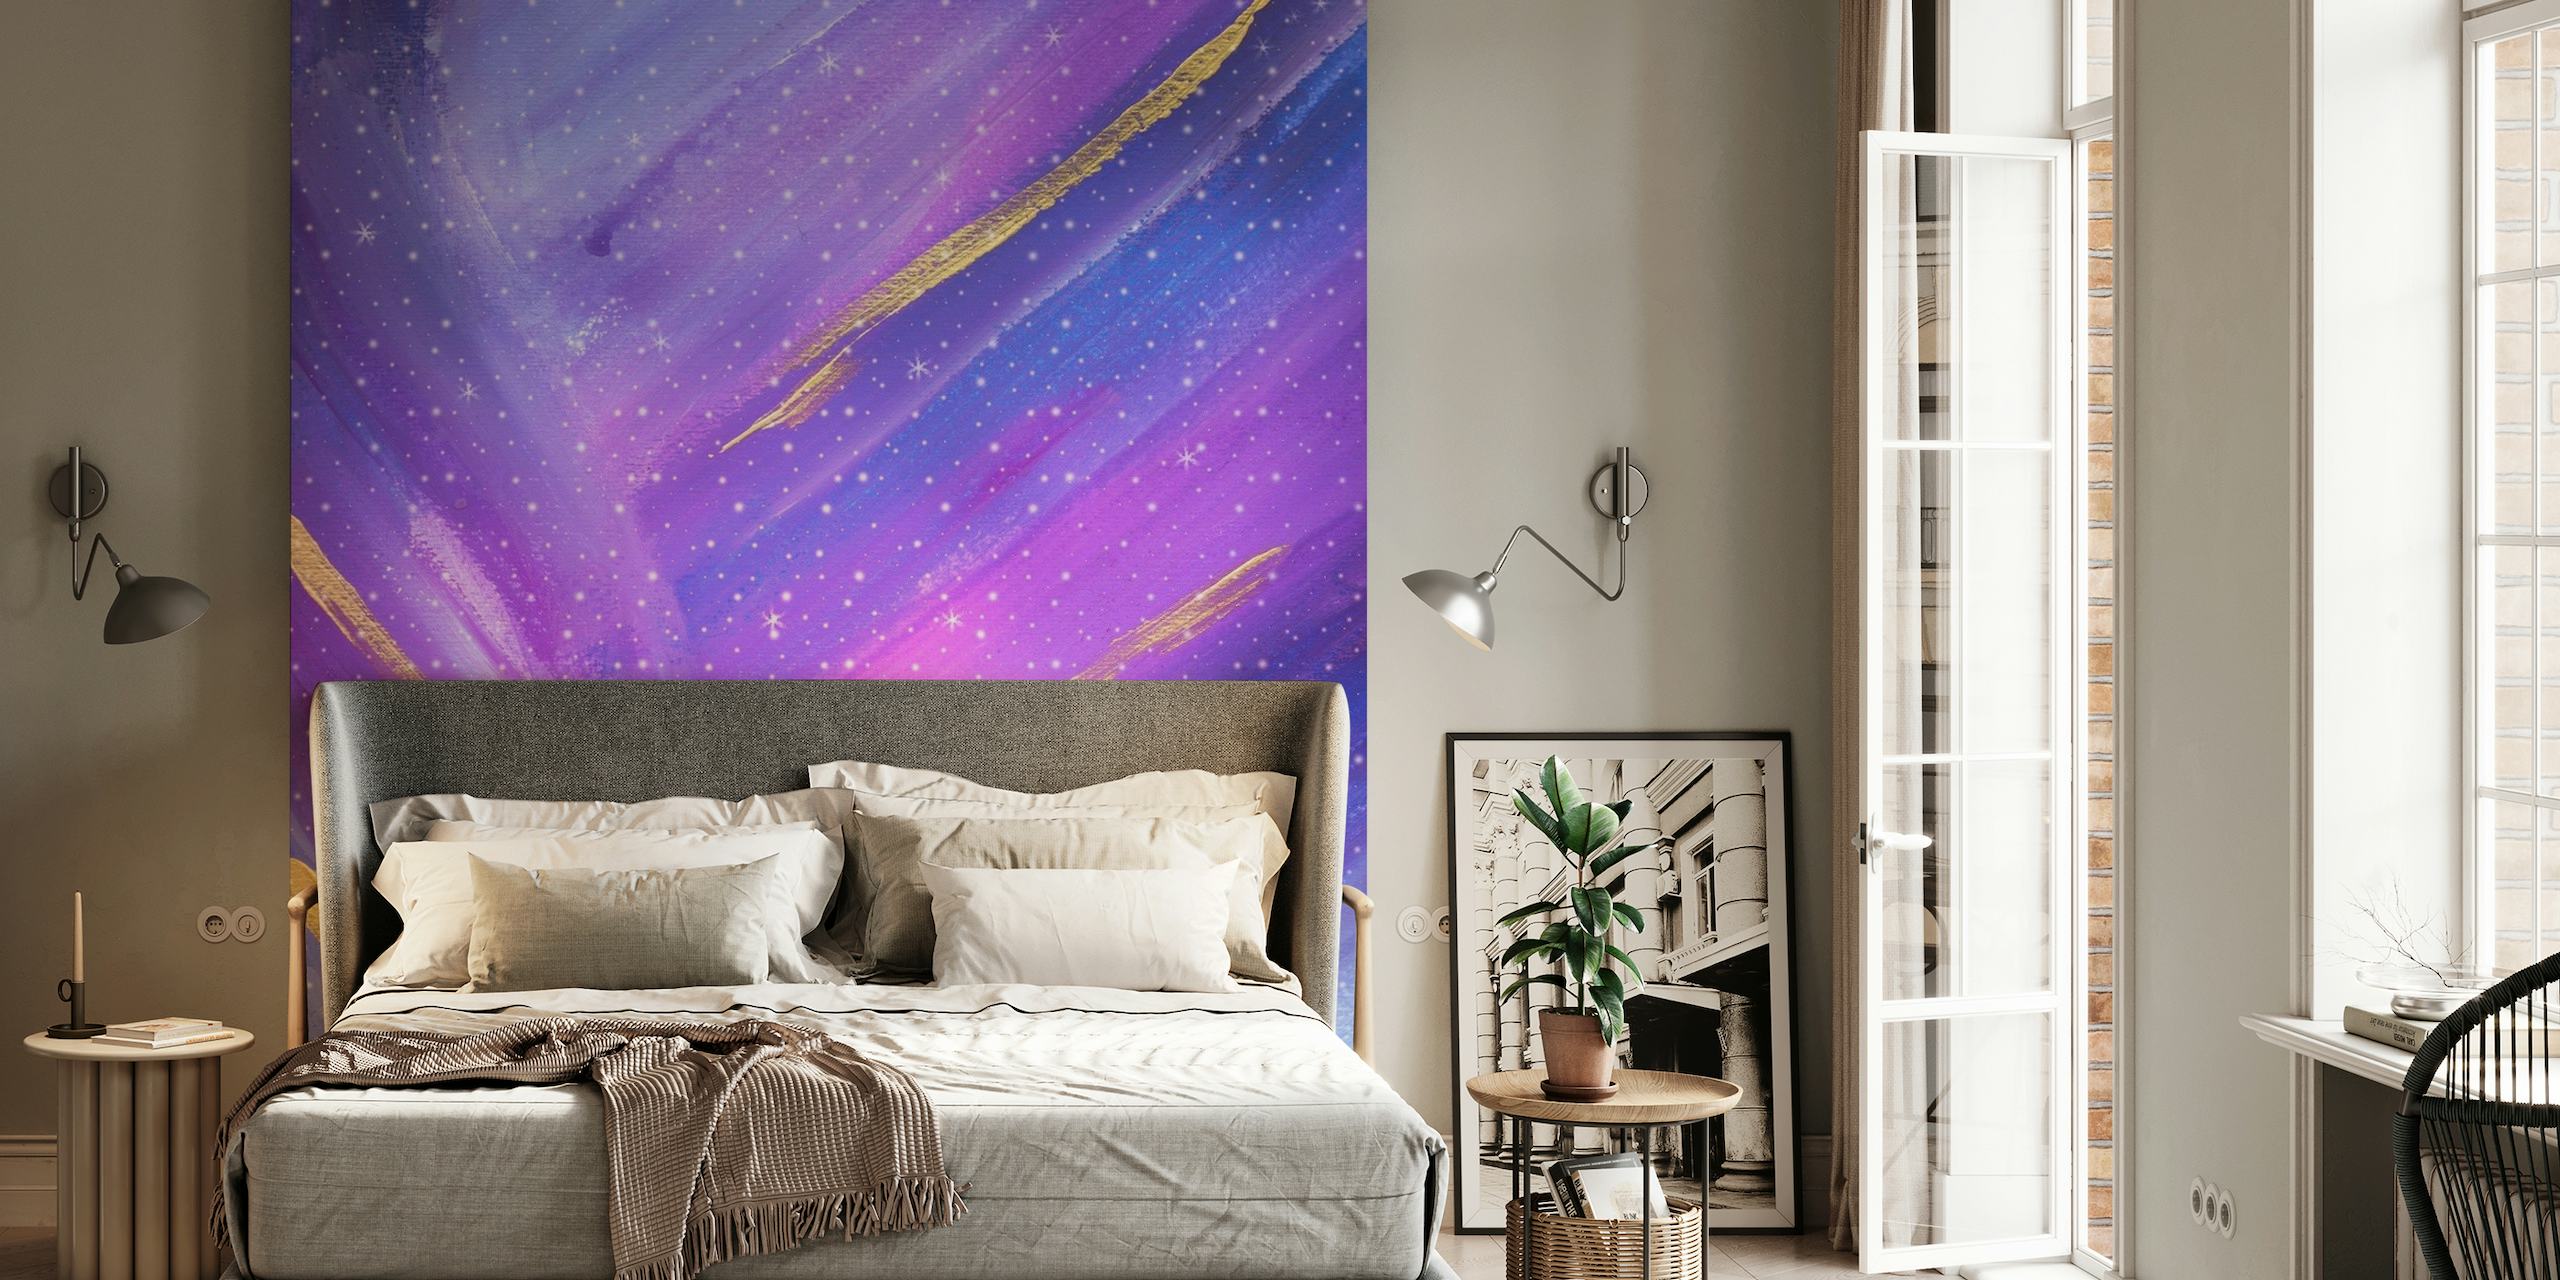 Abstract fotobehang met hemelnevels in paarse en blauwe tinten met gouden accenten